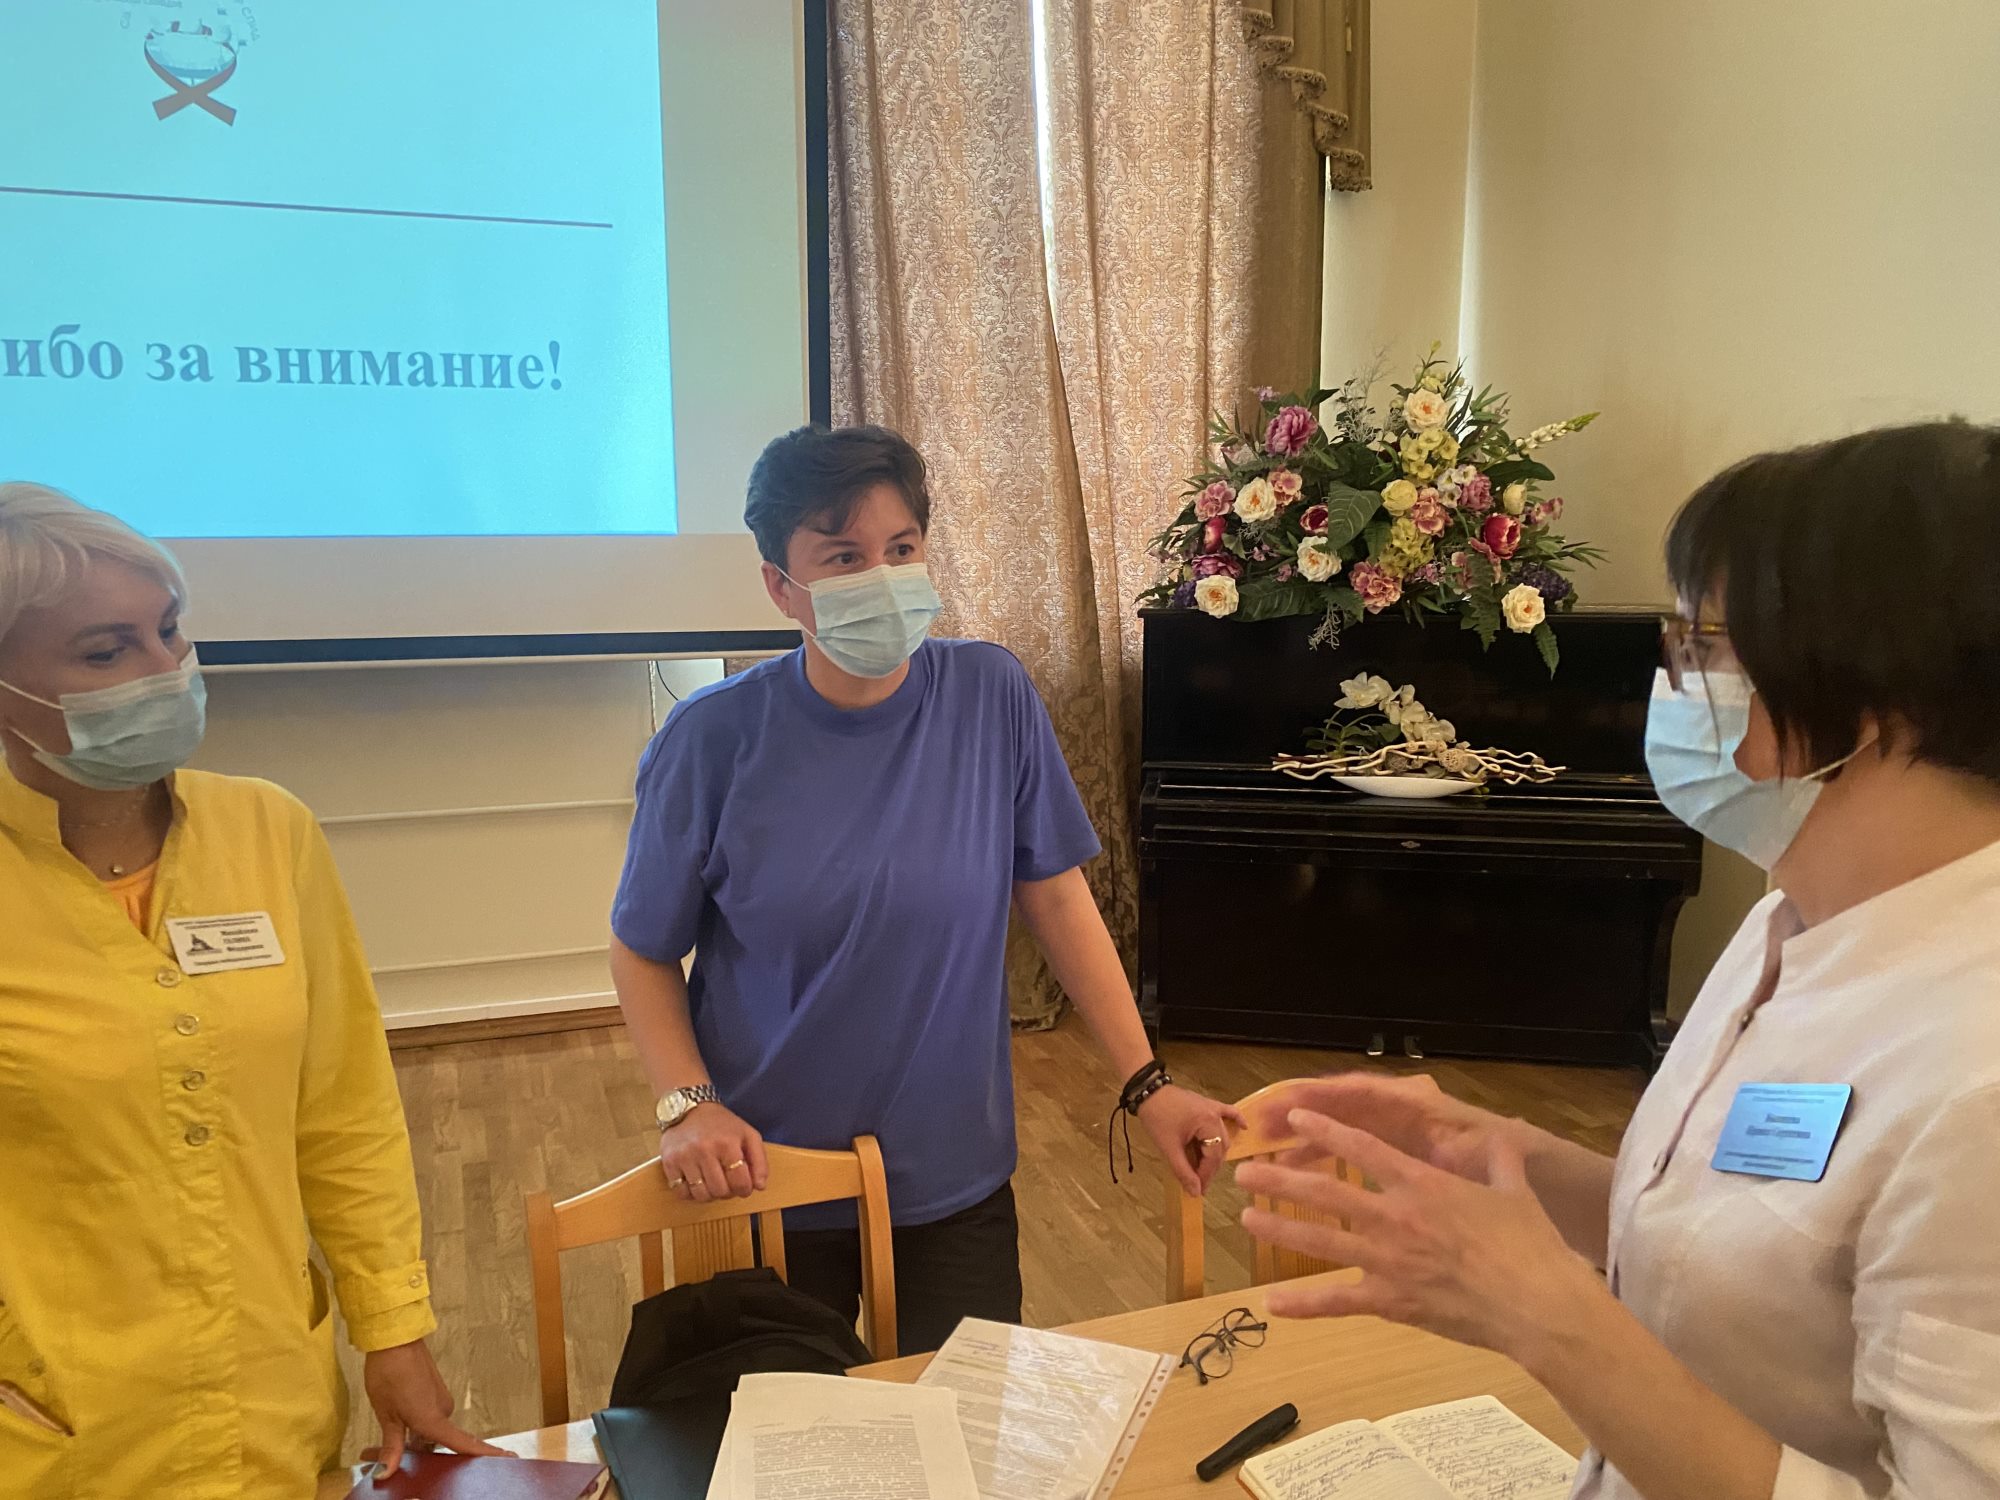 В Мариинской больнице прошла лекция для сотрудников стационара о необходимости увеличения охвата тестирования на ВИЧ-инфекцию населения Санкт-Петербурга